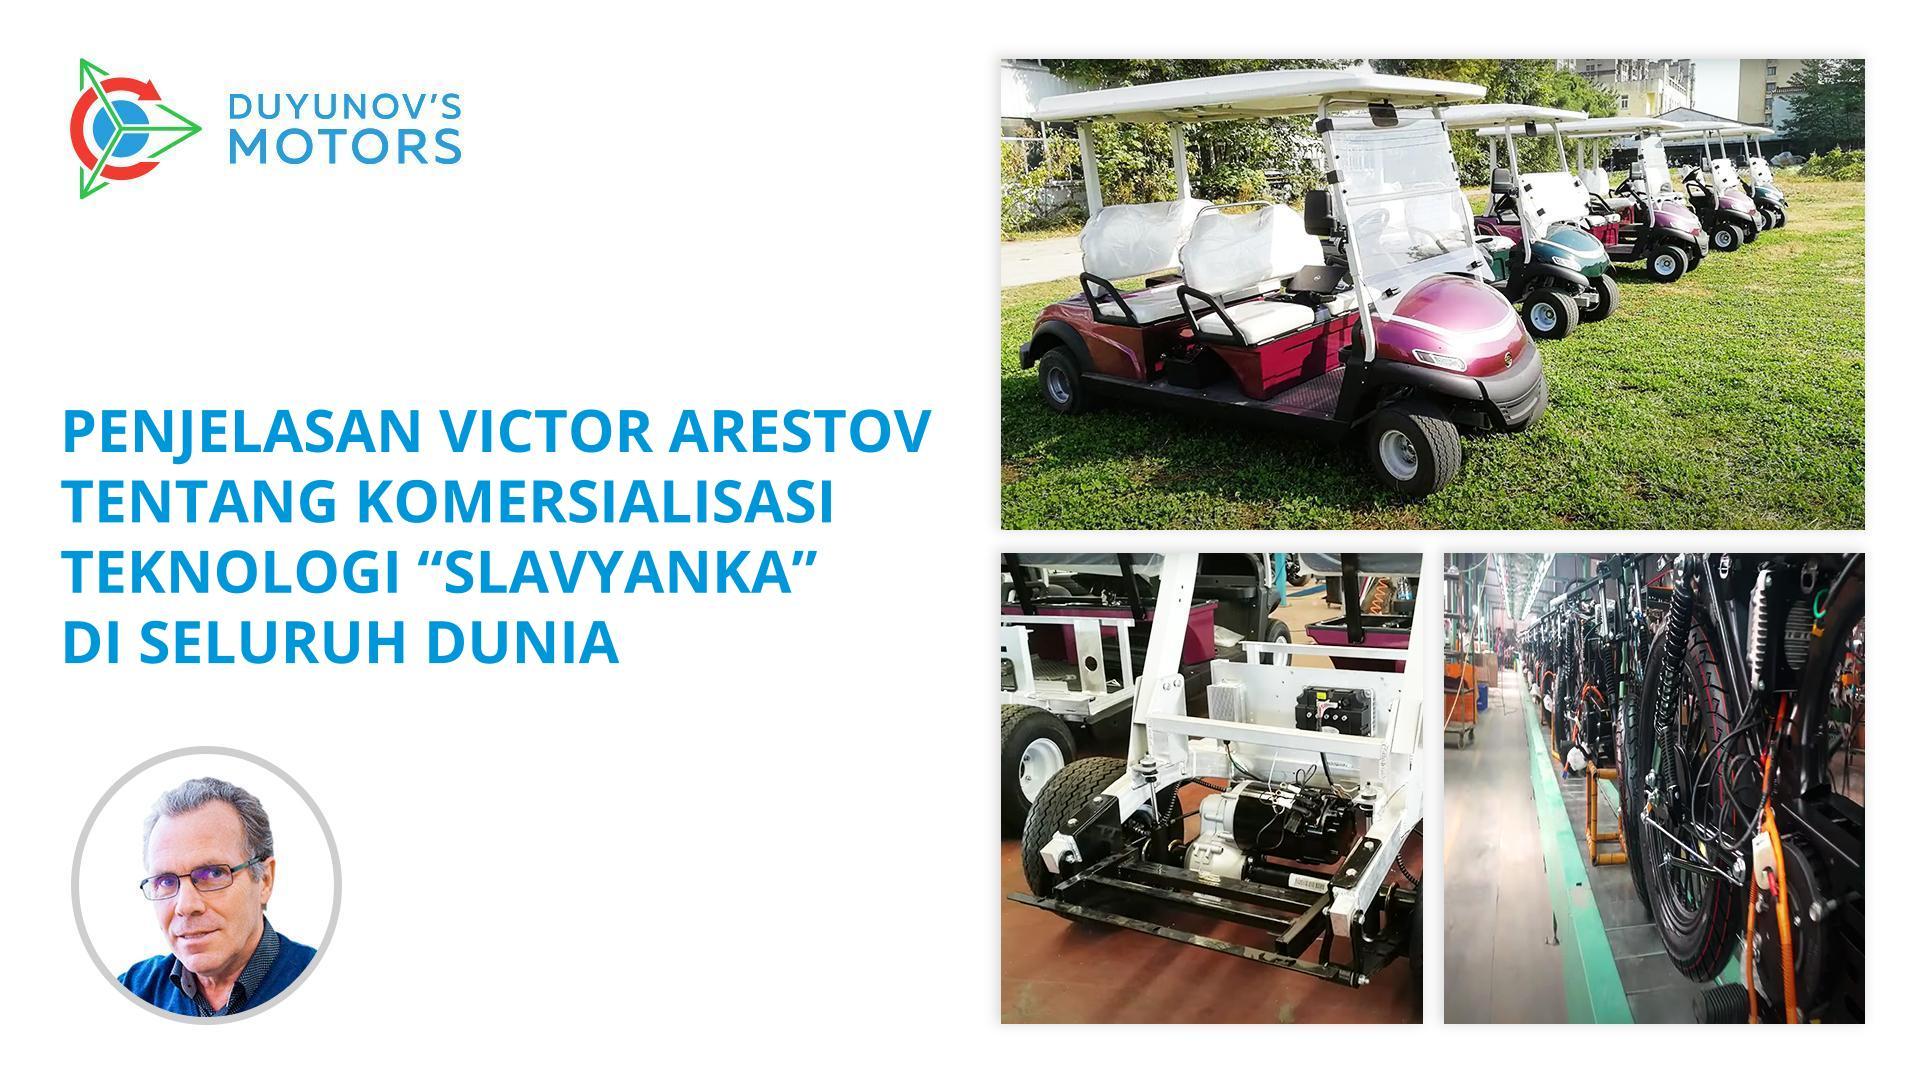 Penjelasan Victor Arestov tentang komersialisasi teknologi "Slavyanka" di seluruh dunia